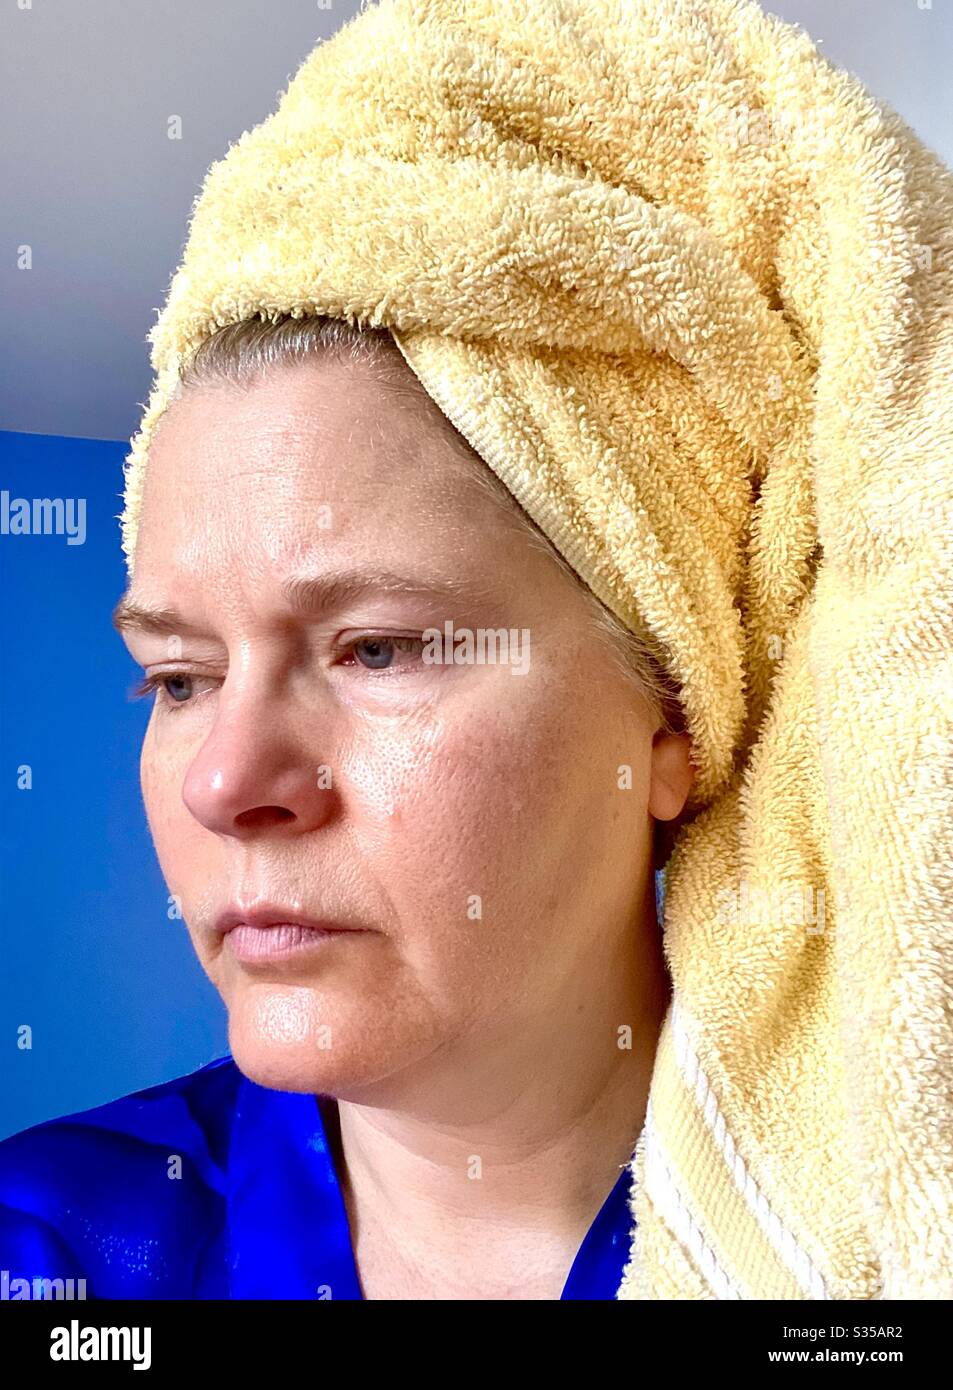 Frau mittleren Alters, die frisch mit einem gelben Handtuch auf ihrem nassen Haar geduscht wurde. Stockfoto